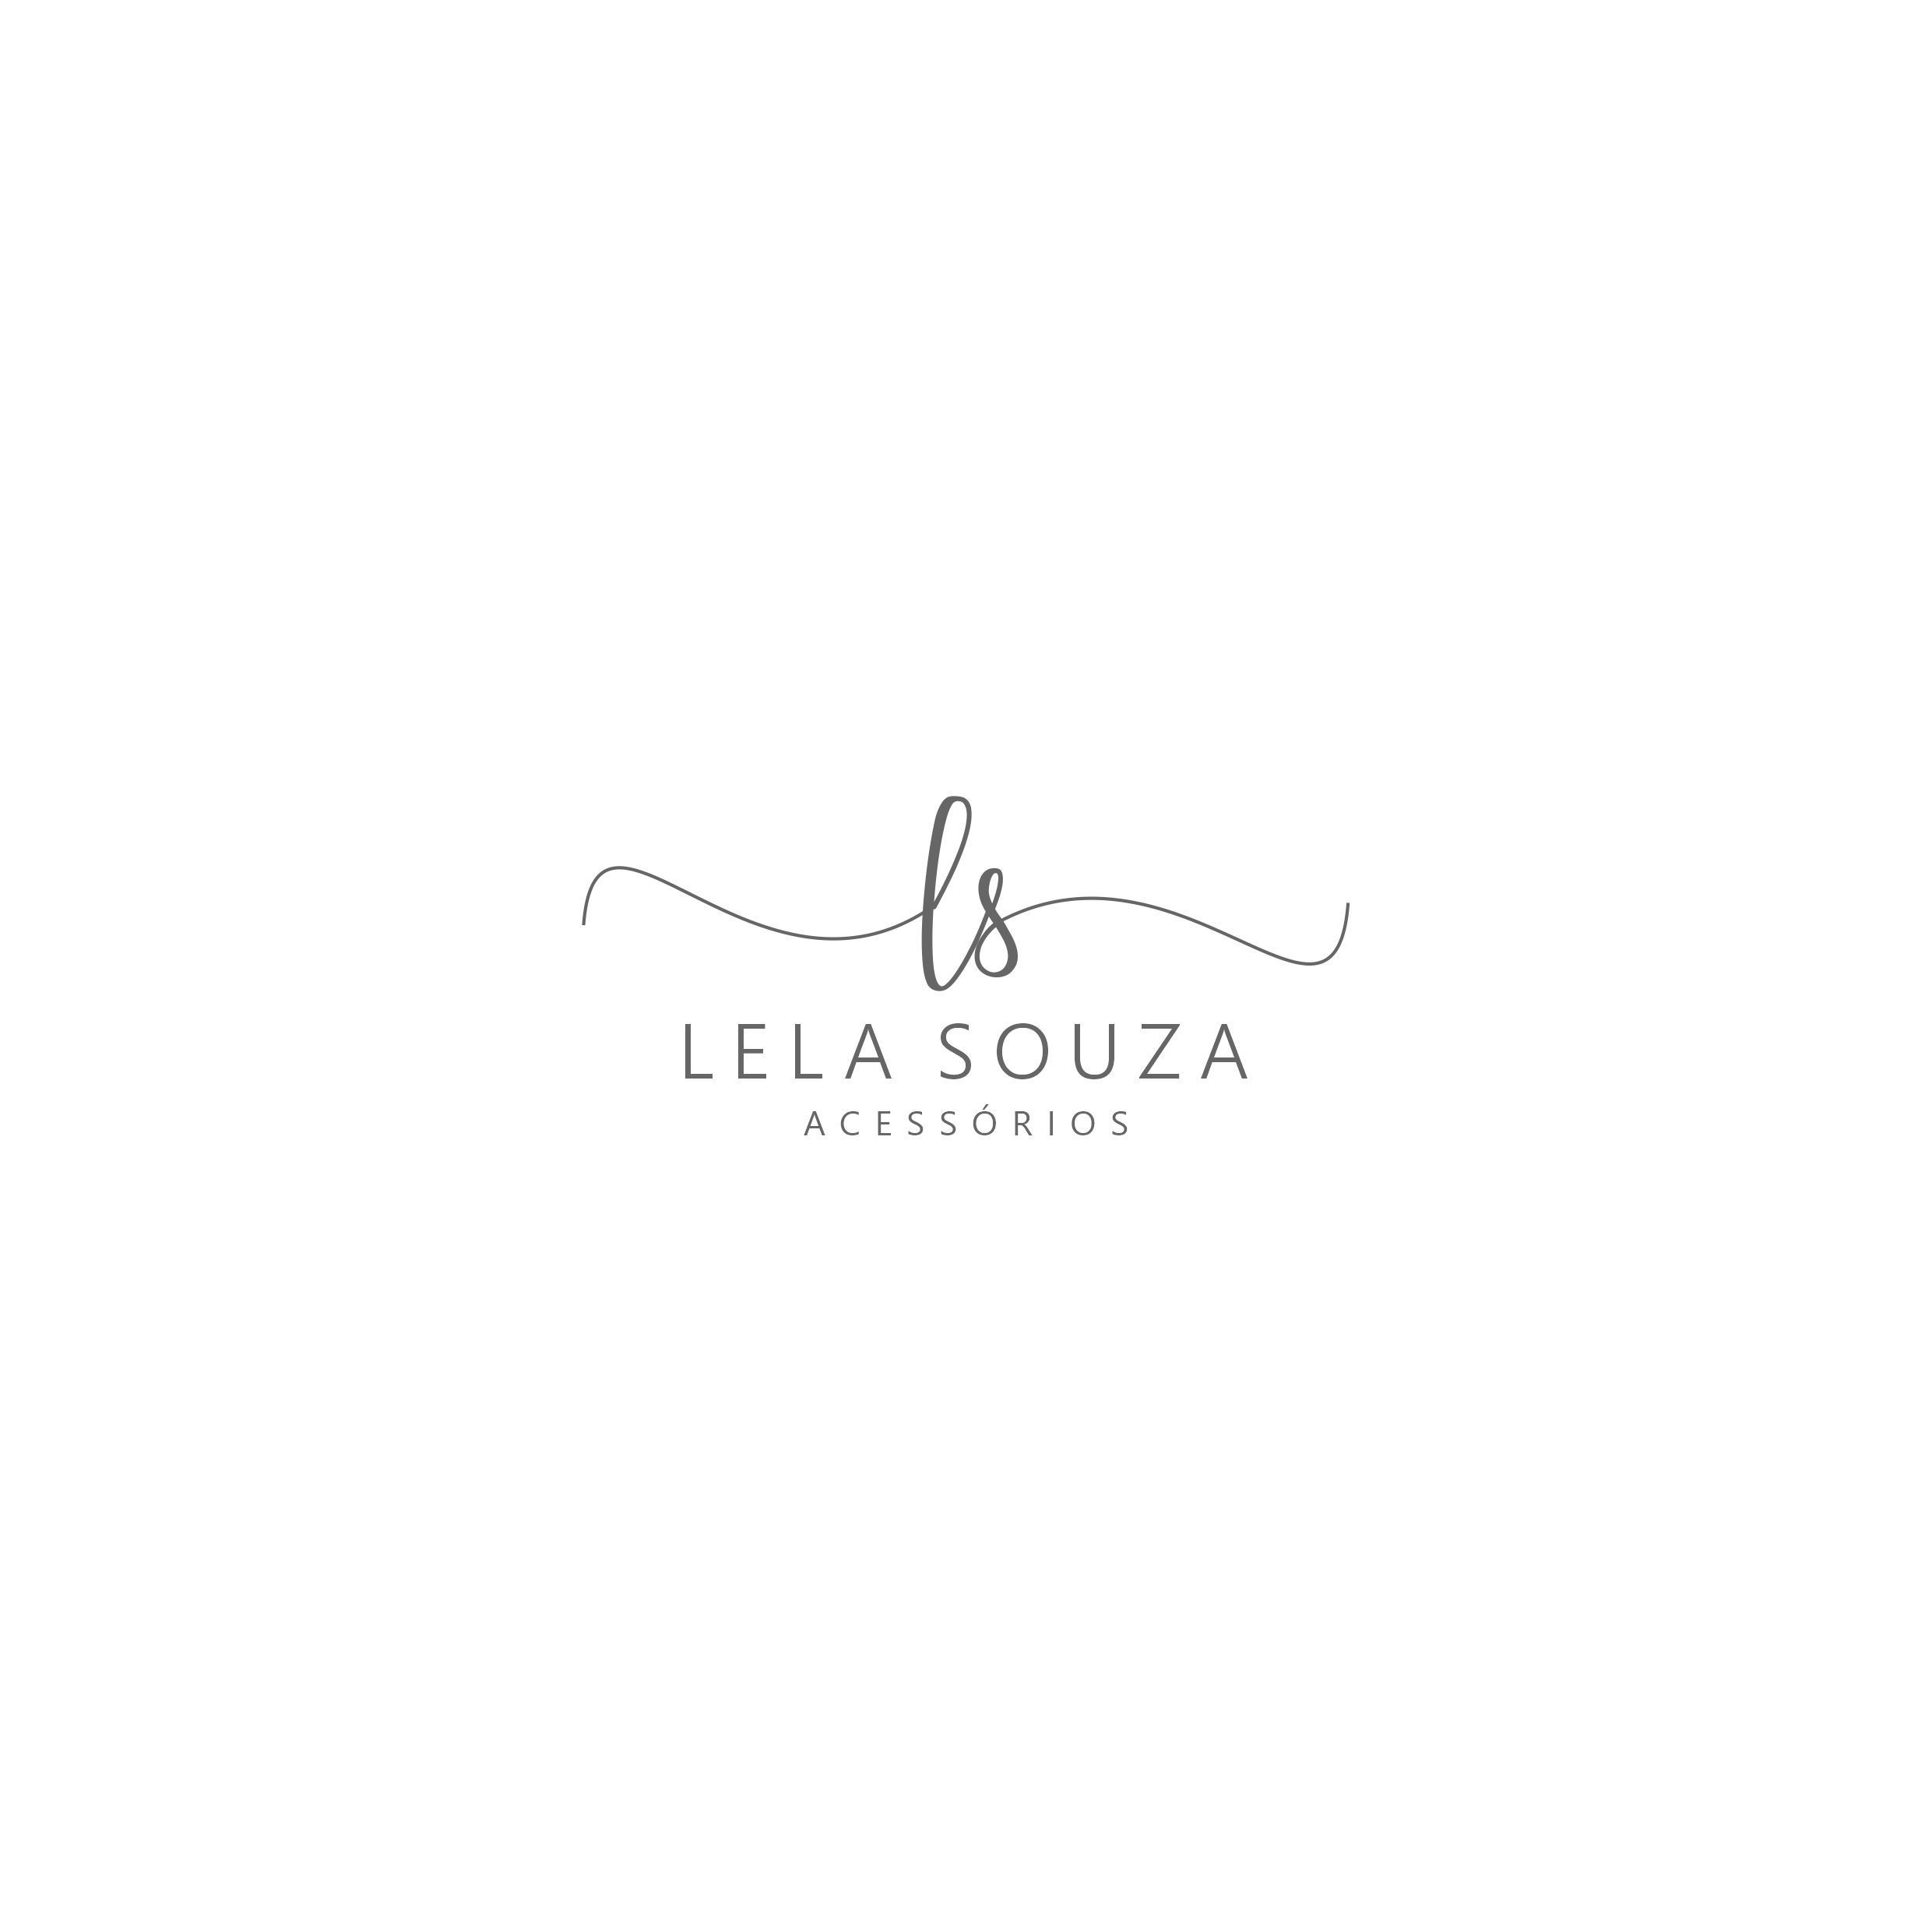 Logotipo Lela Souza Acessórios